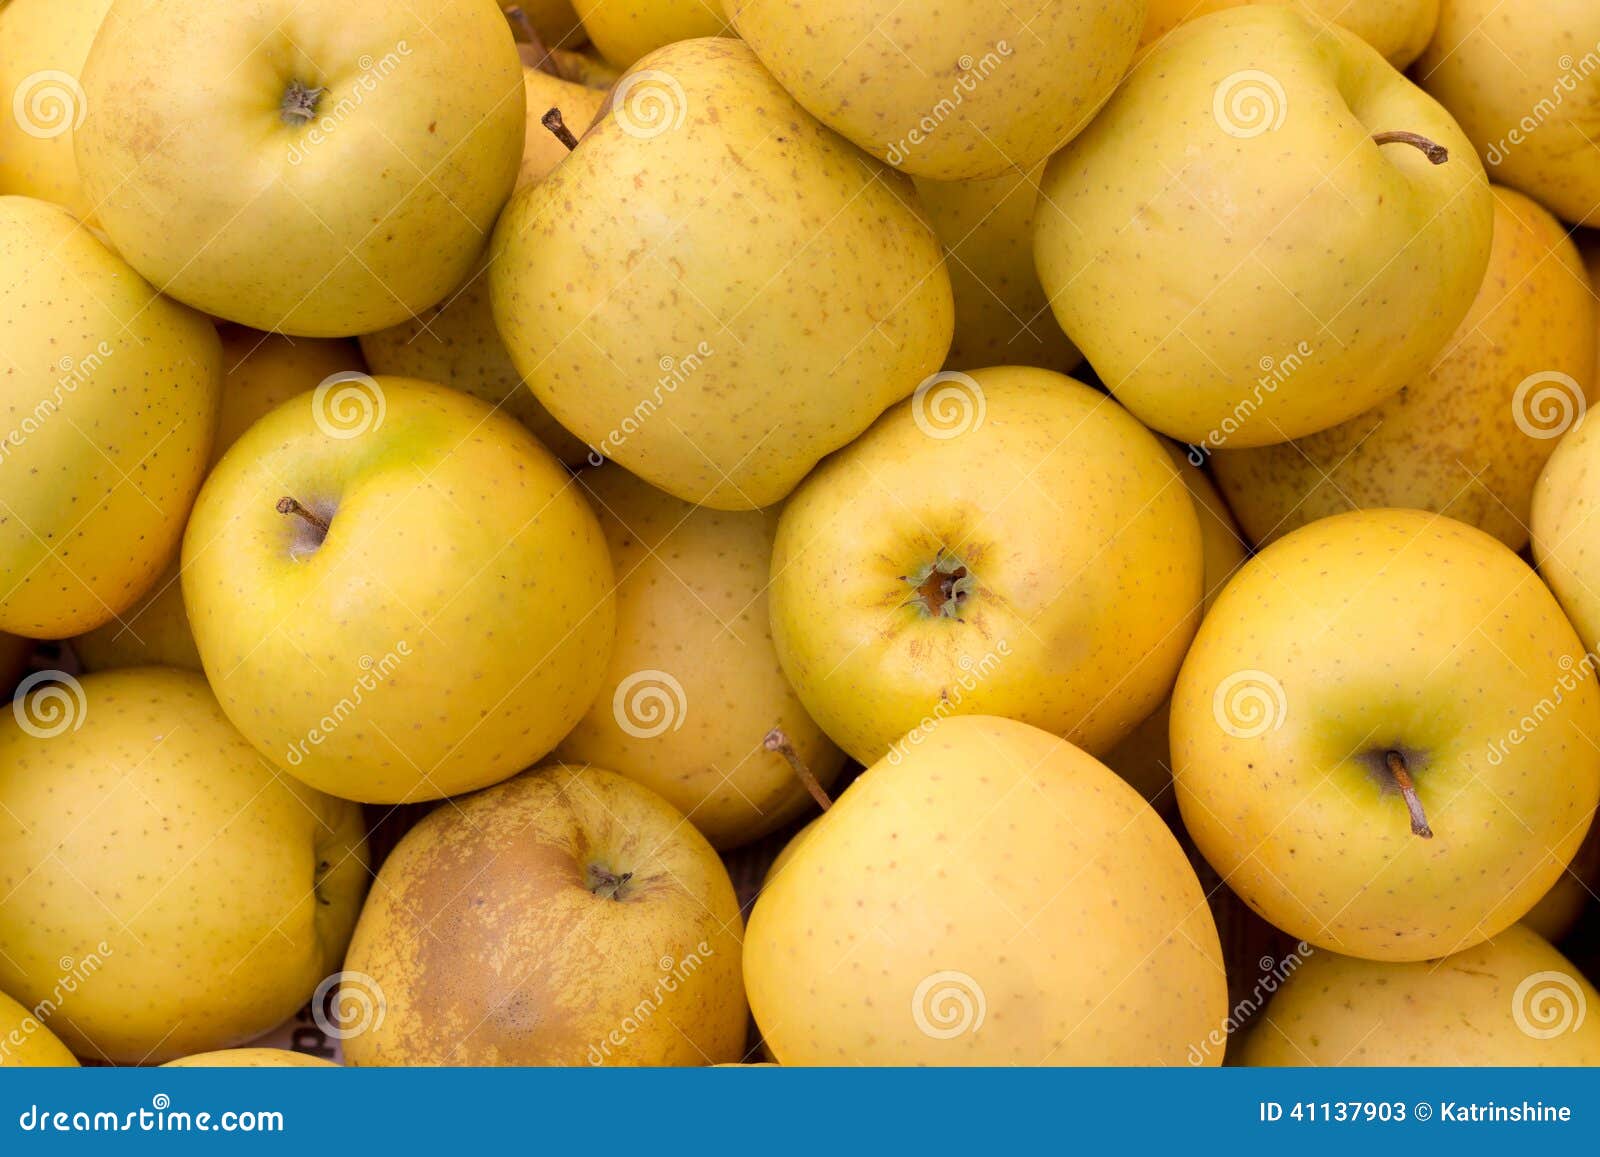 Почему яблоко желтое. Яблоки желтые. Мягкие маленькие желтые яблоки. Желтые яблоки россыпью.